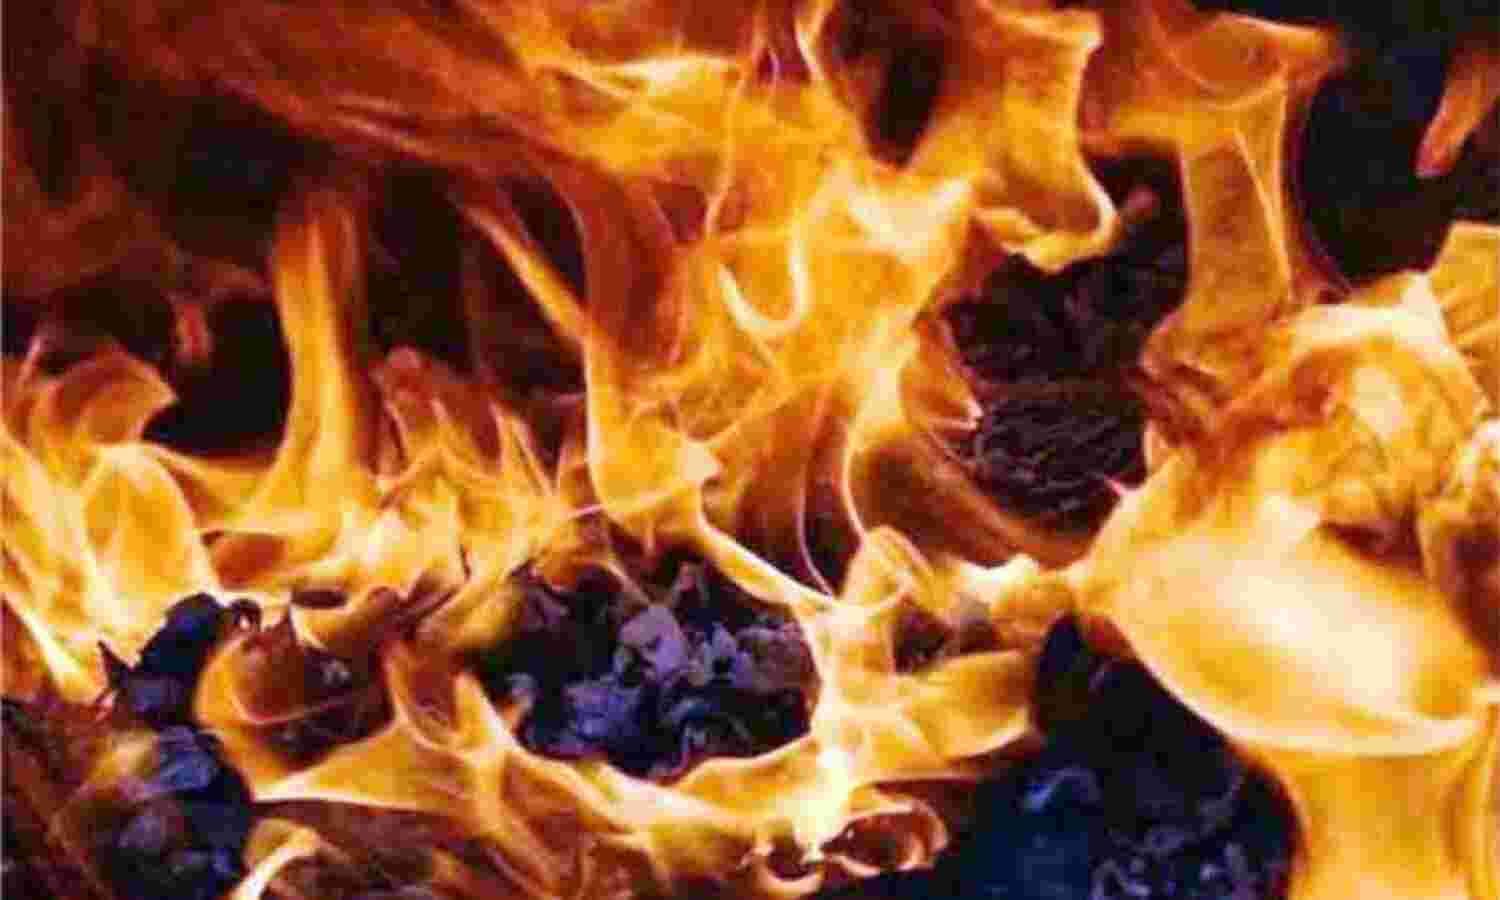 बंद पड़े गोदाम में लगी भीषण आग से मचा हड़कंप, 10 वाहन जलकर हुए राख